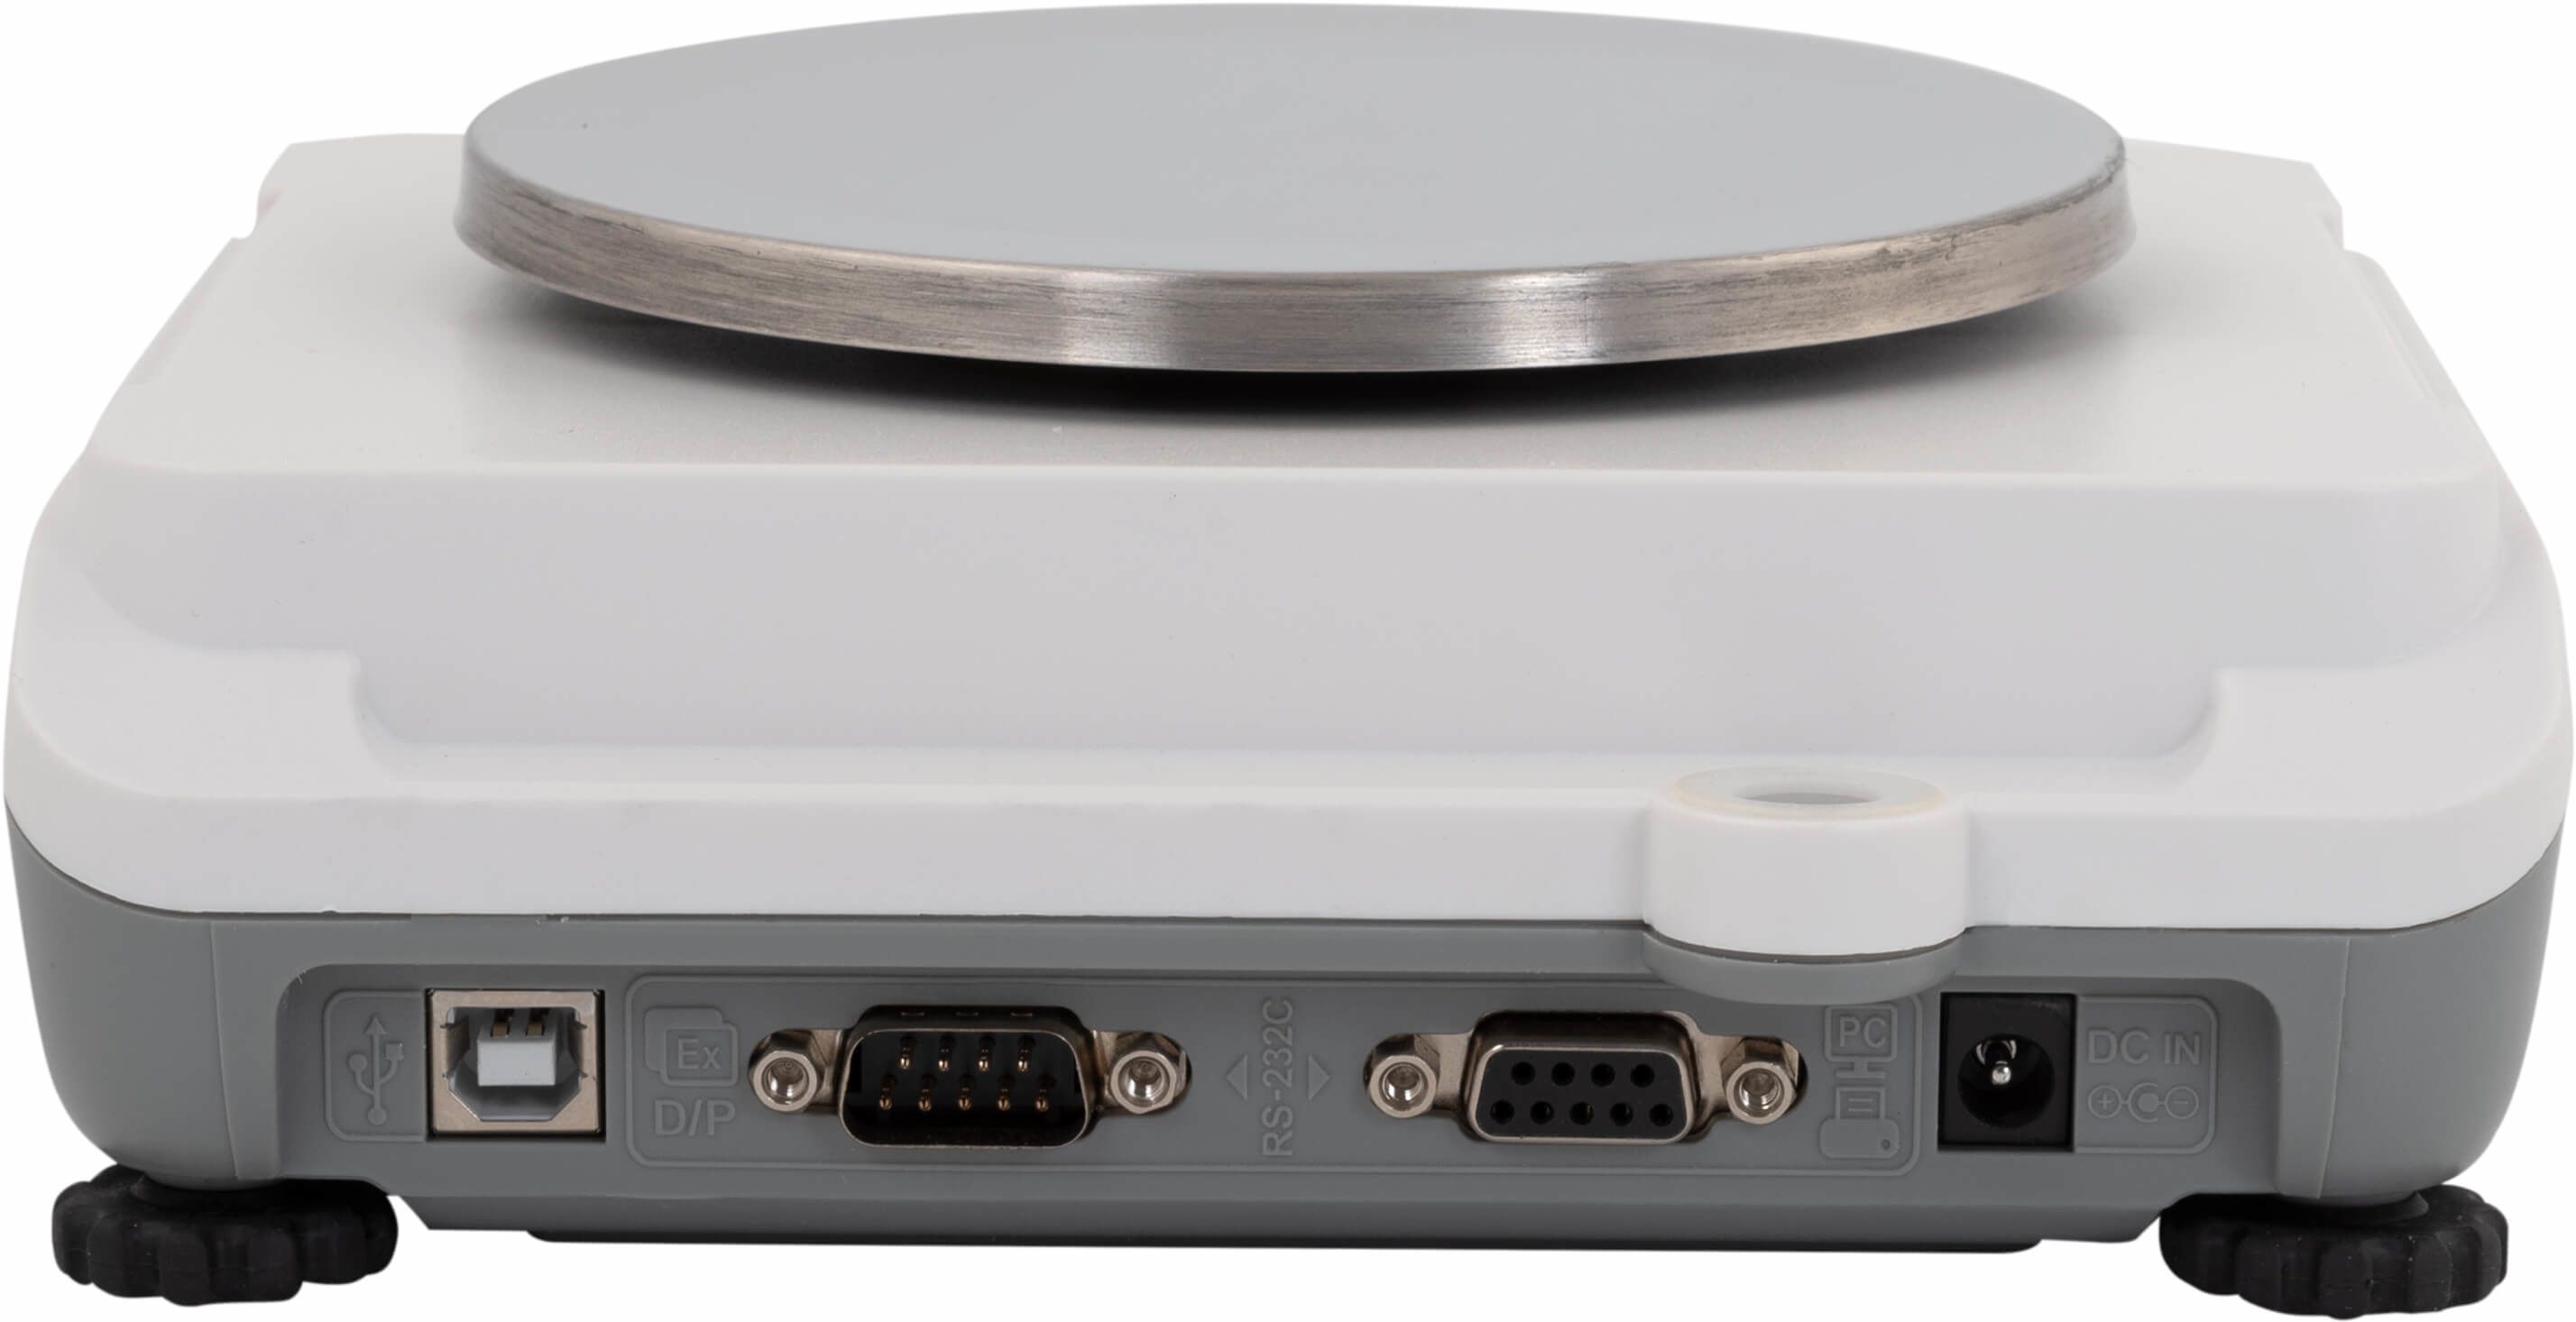 Лабораторные весы CAS XE-6000 RS-232, USB, наибольший предел взвешивания (НПВ) 6 кг., дискретность 0,1 г.